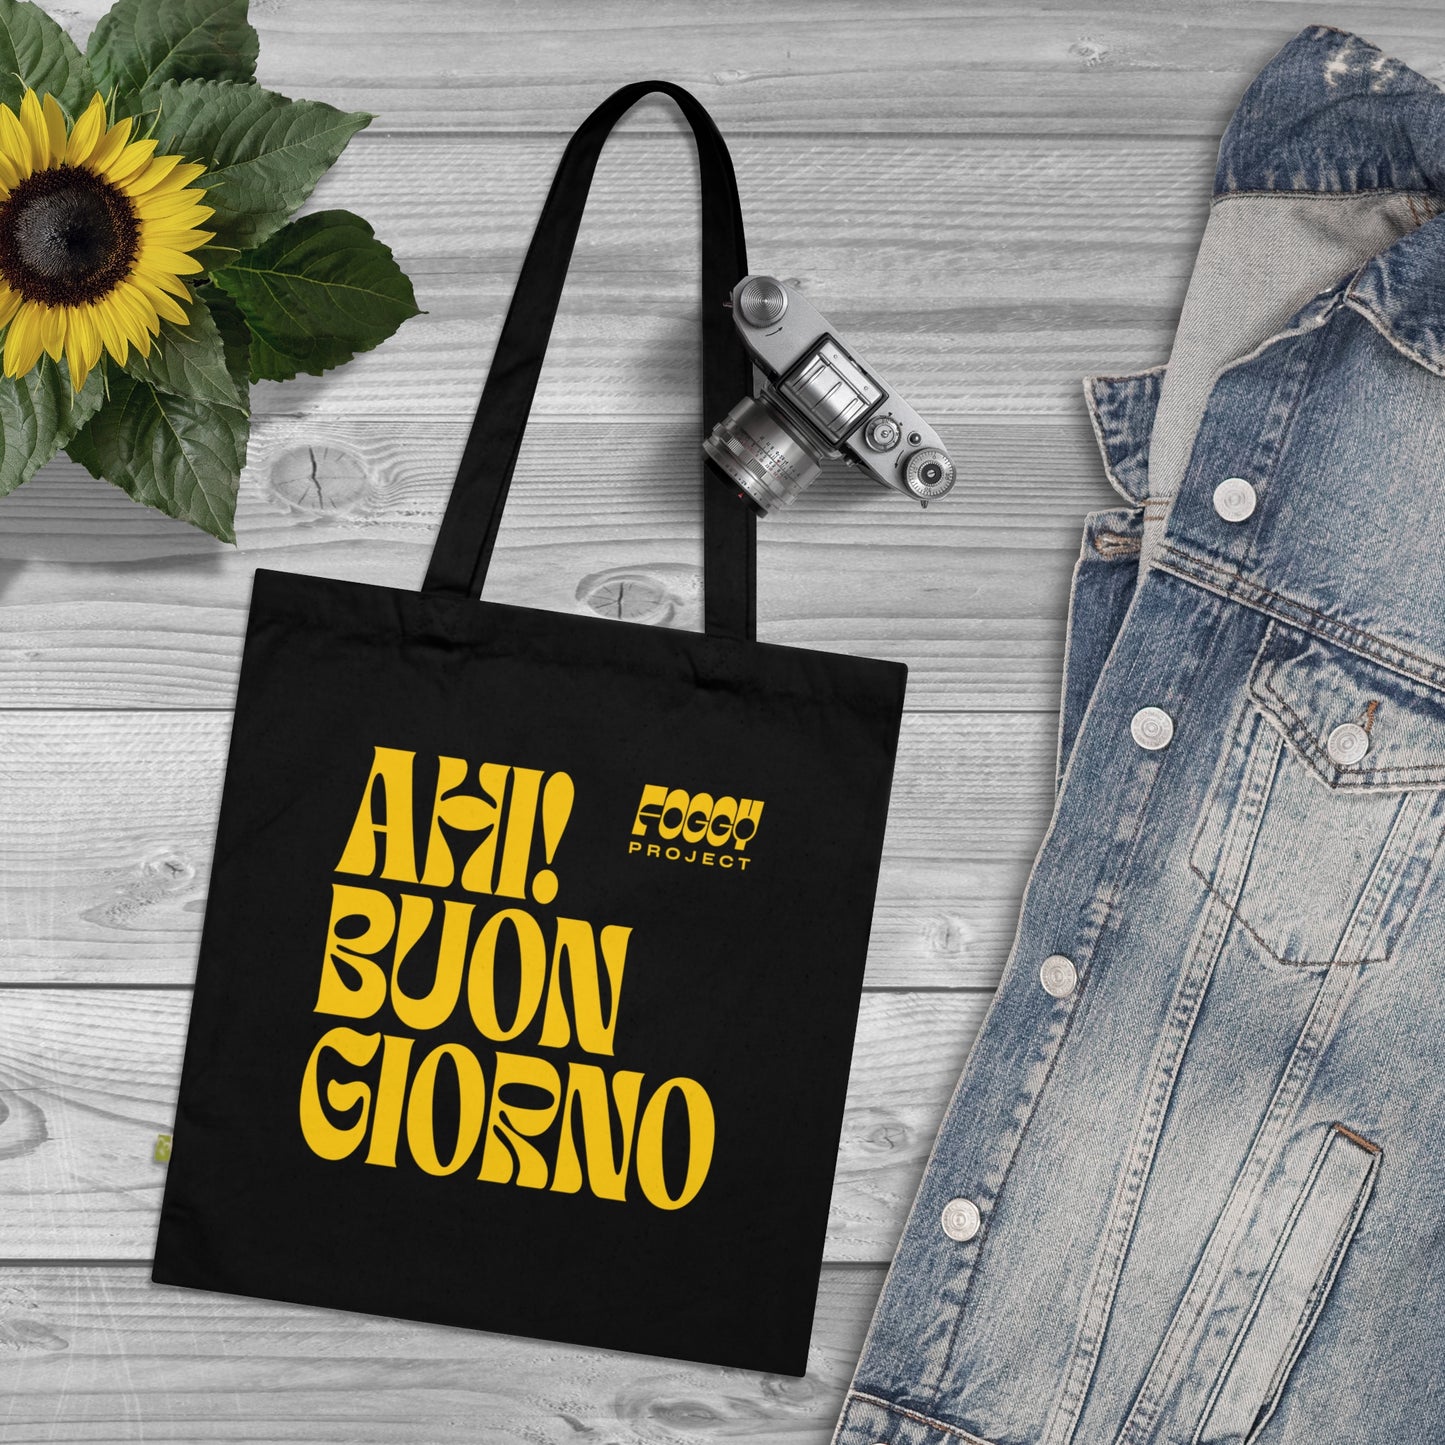 Foggy Project's "Ahi! Buongiorno" Organic Cotton Tote Bag Black